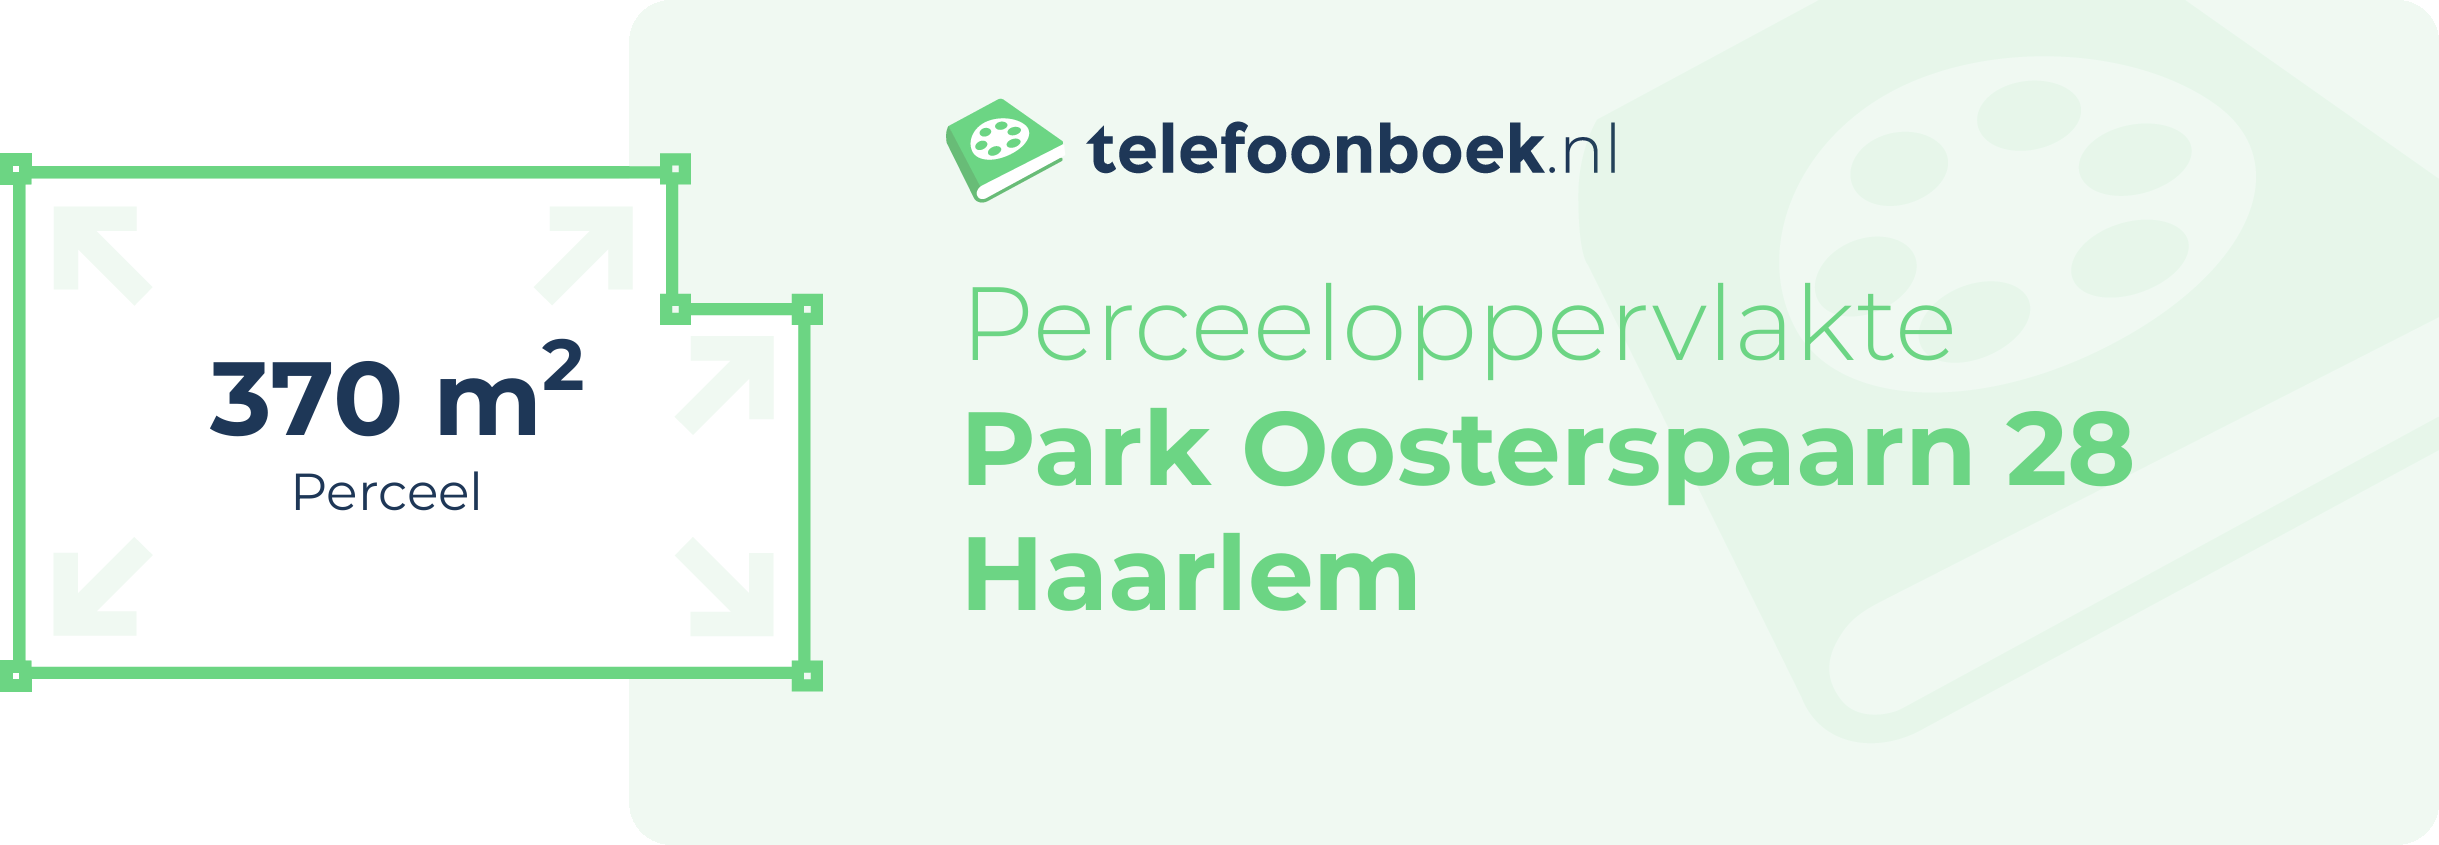 Perceeloppervlakte Park Oosterspaarn 28 Haarlem